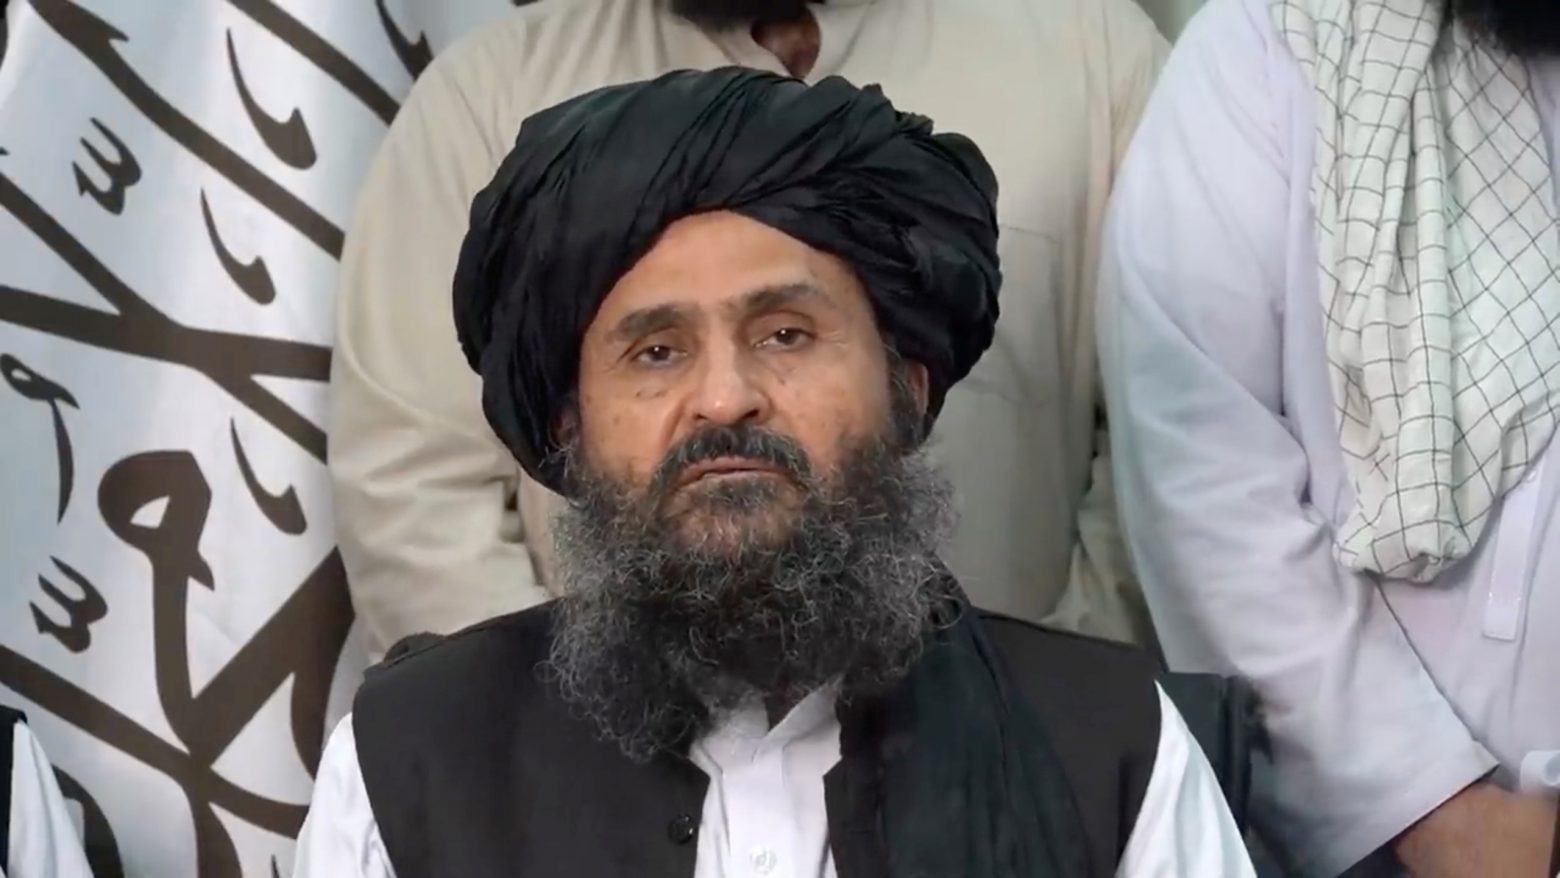 Αφγανιστάν - Αποκάλυψη της Washington Post - Μυστική συνάντηση του διευθυντή της CIA με τον αρχηγό των Ταλιμπάν